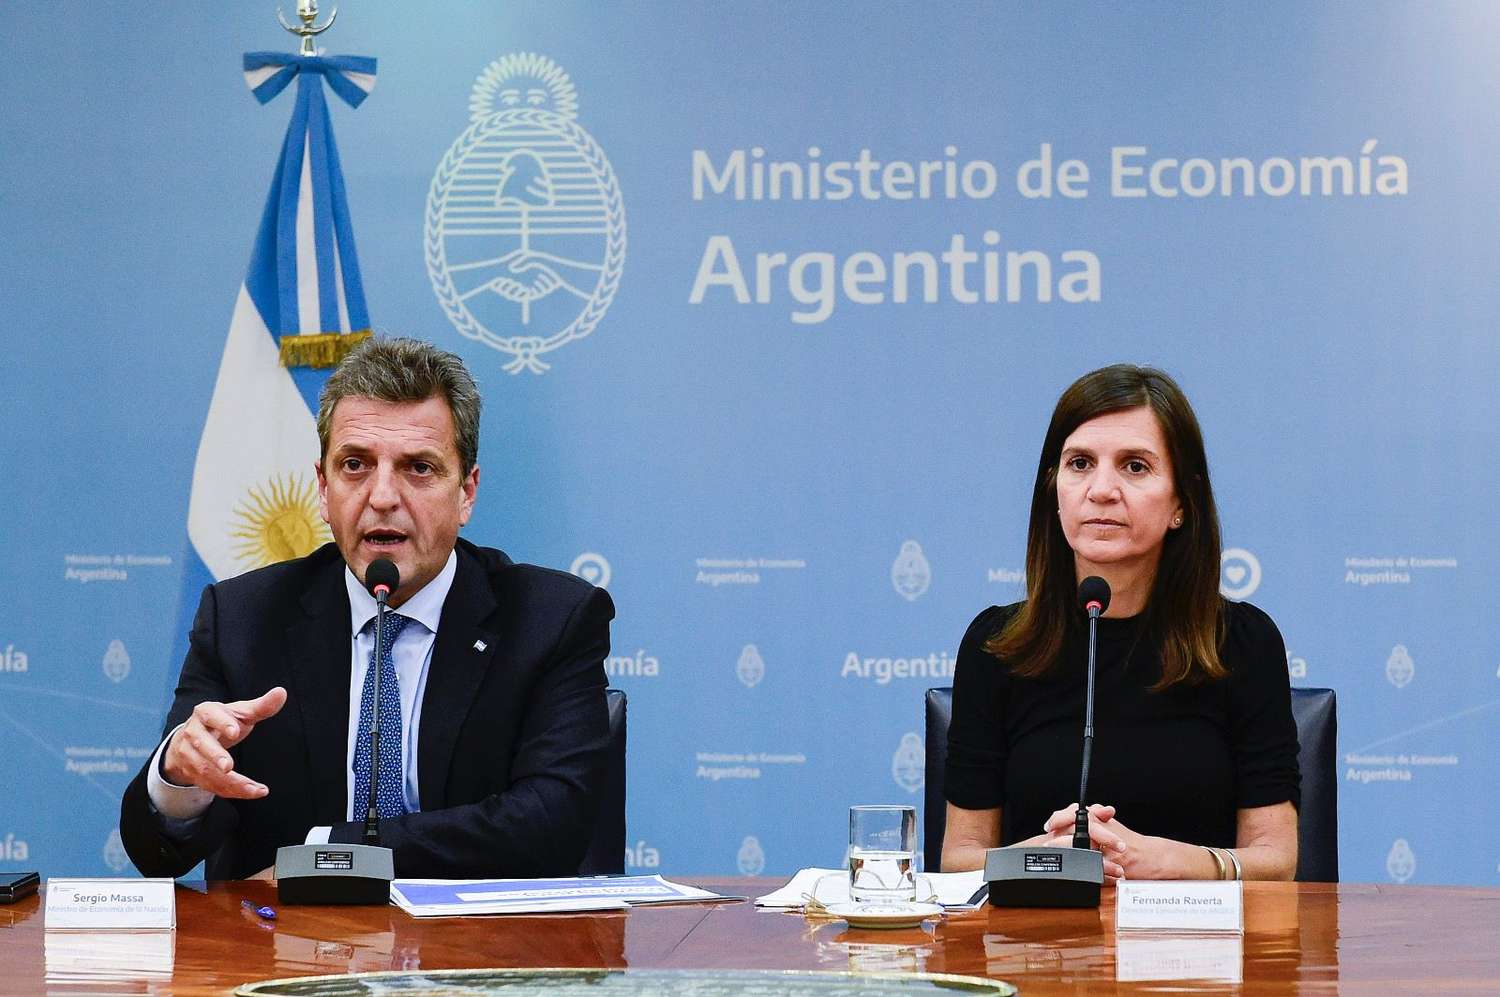 La medida fue anunciada por el ministro de Economía, Sergio Massa, y la titular del organismo, Fernanda Raverta.